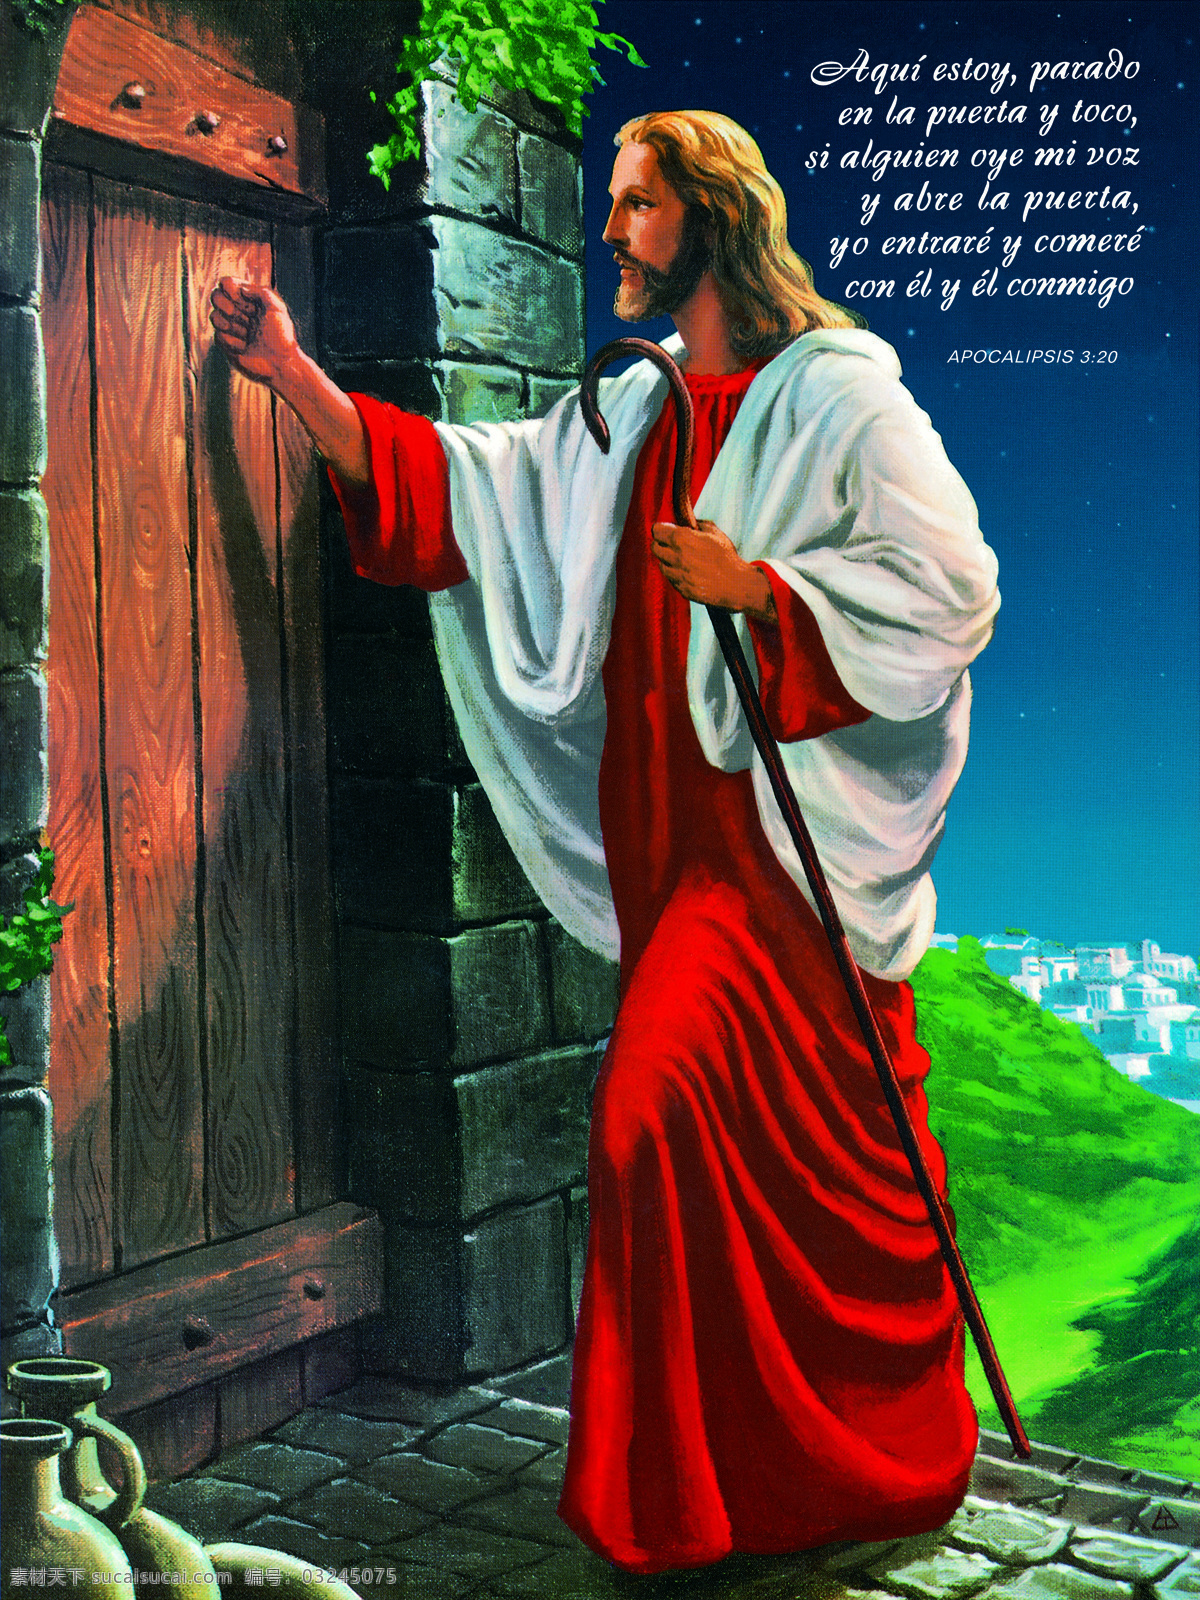 耶稣敲门 耶稣 神父 十字架 主 信徒 爱心 基督教 装饰画 无框画 壁挂 写真 喷绘 上帝 绘画书法 文化艺术